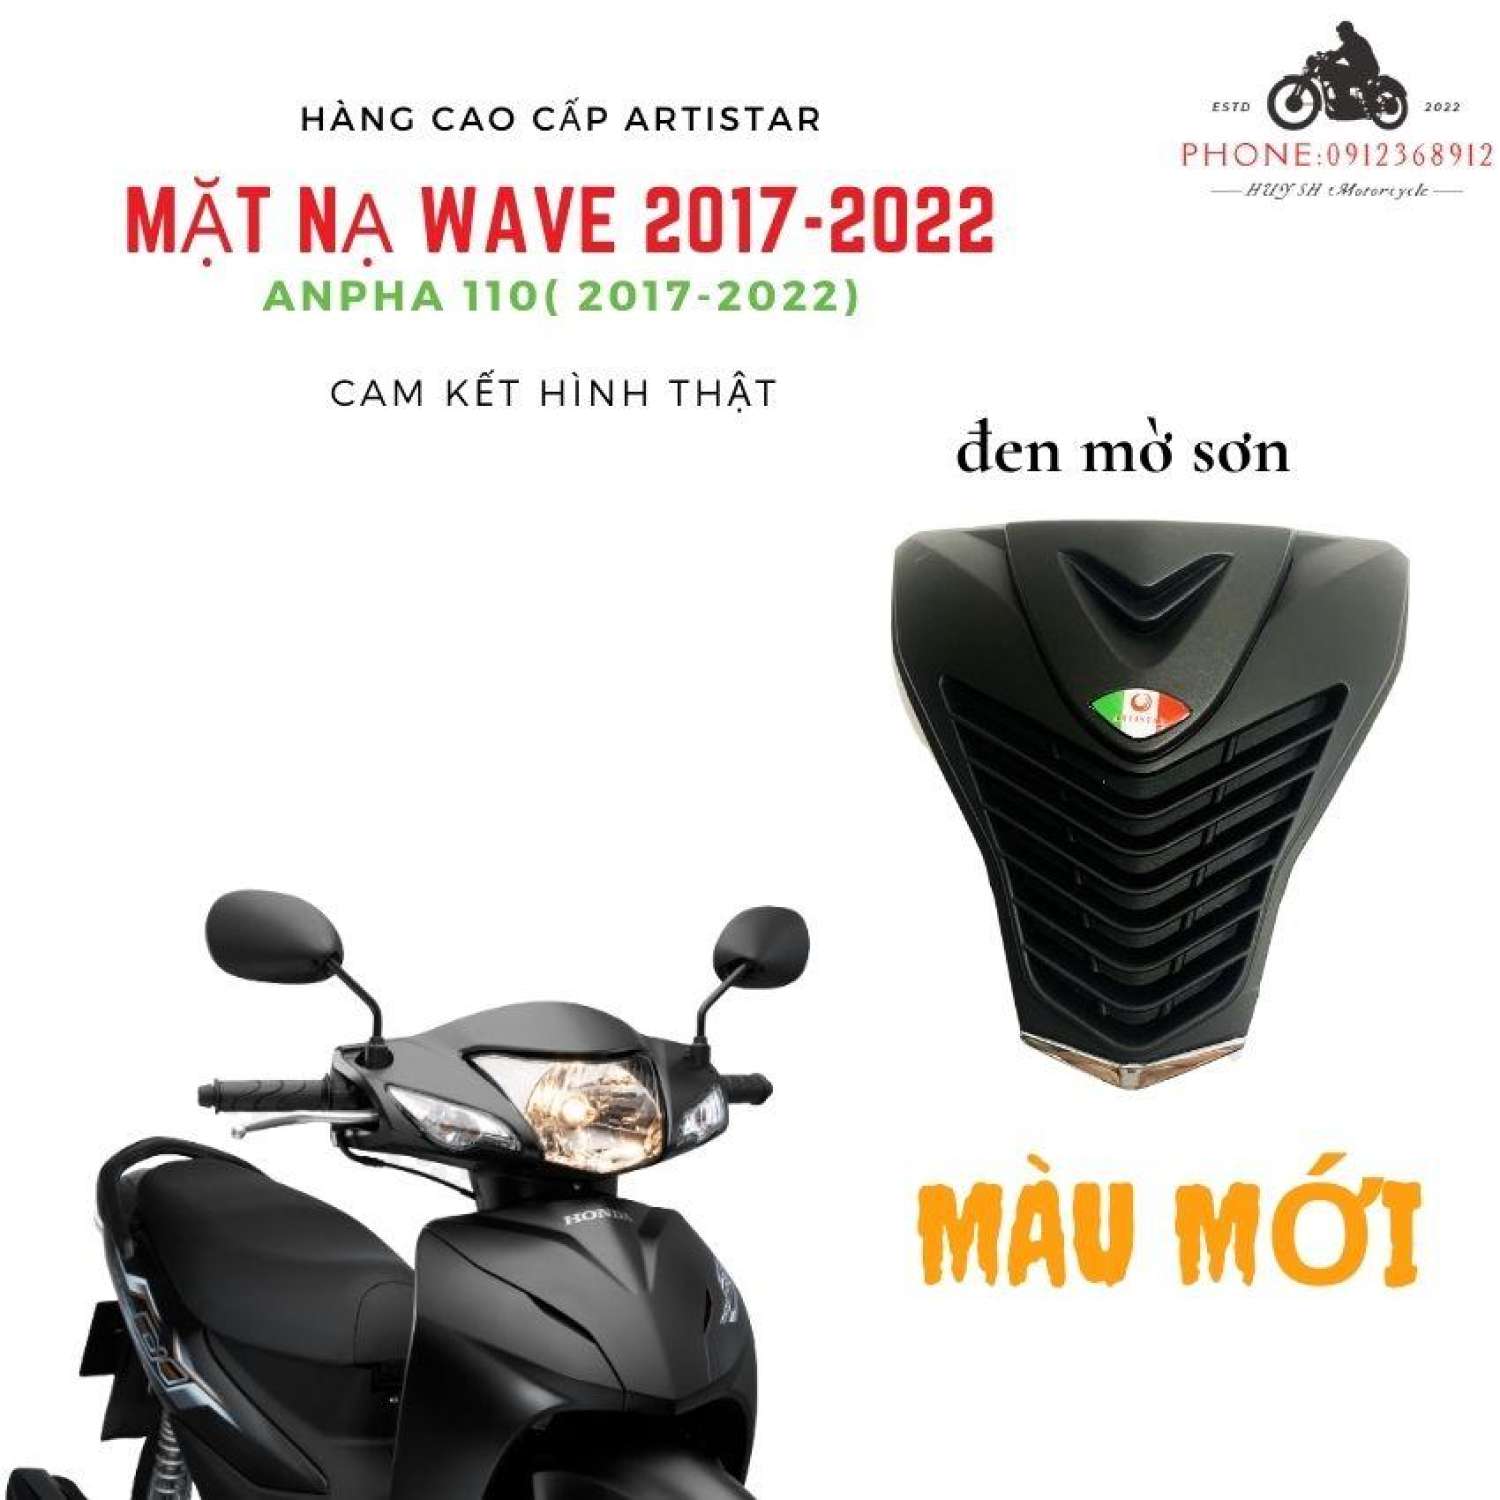 Mua Mặt nạ Ý cho Xe Máy Honda Wave đời 201720182019  xanh biển tại Bảo  long